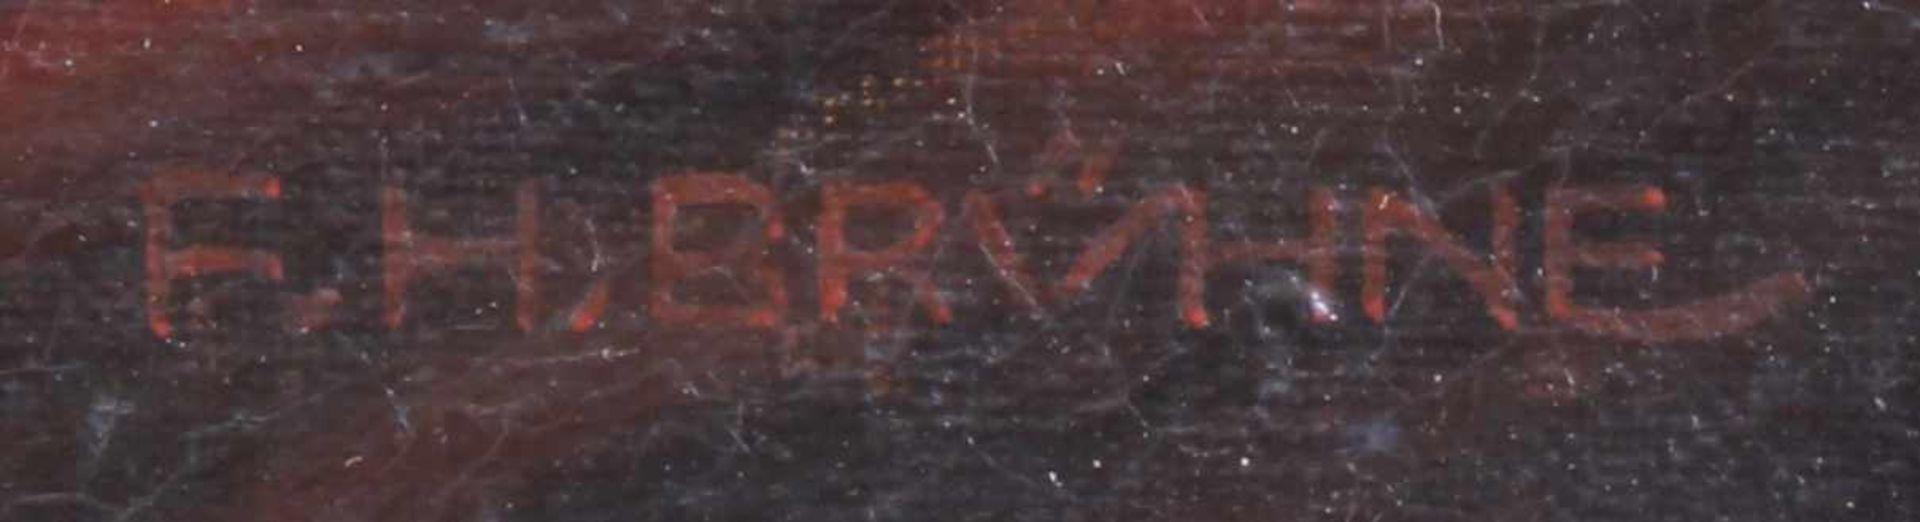 Brühne, Friedrich Heinrich (19./20.Jh.), "Abguss eines Konverters", Öl auf Leinwand, signiert - Bild 6 aus 8